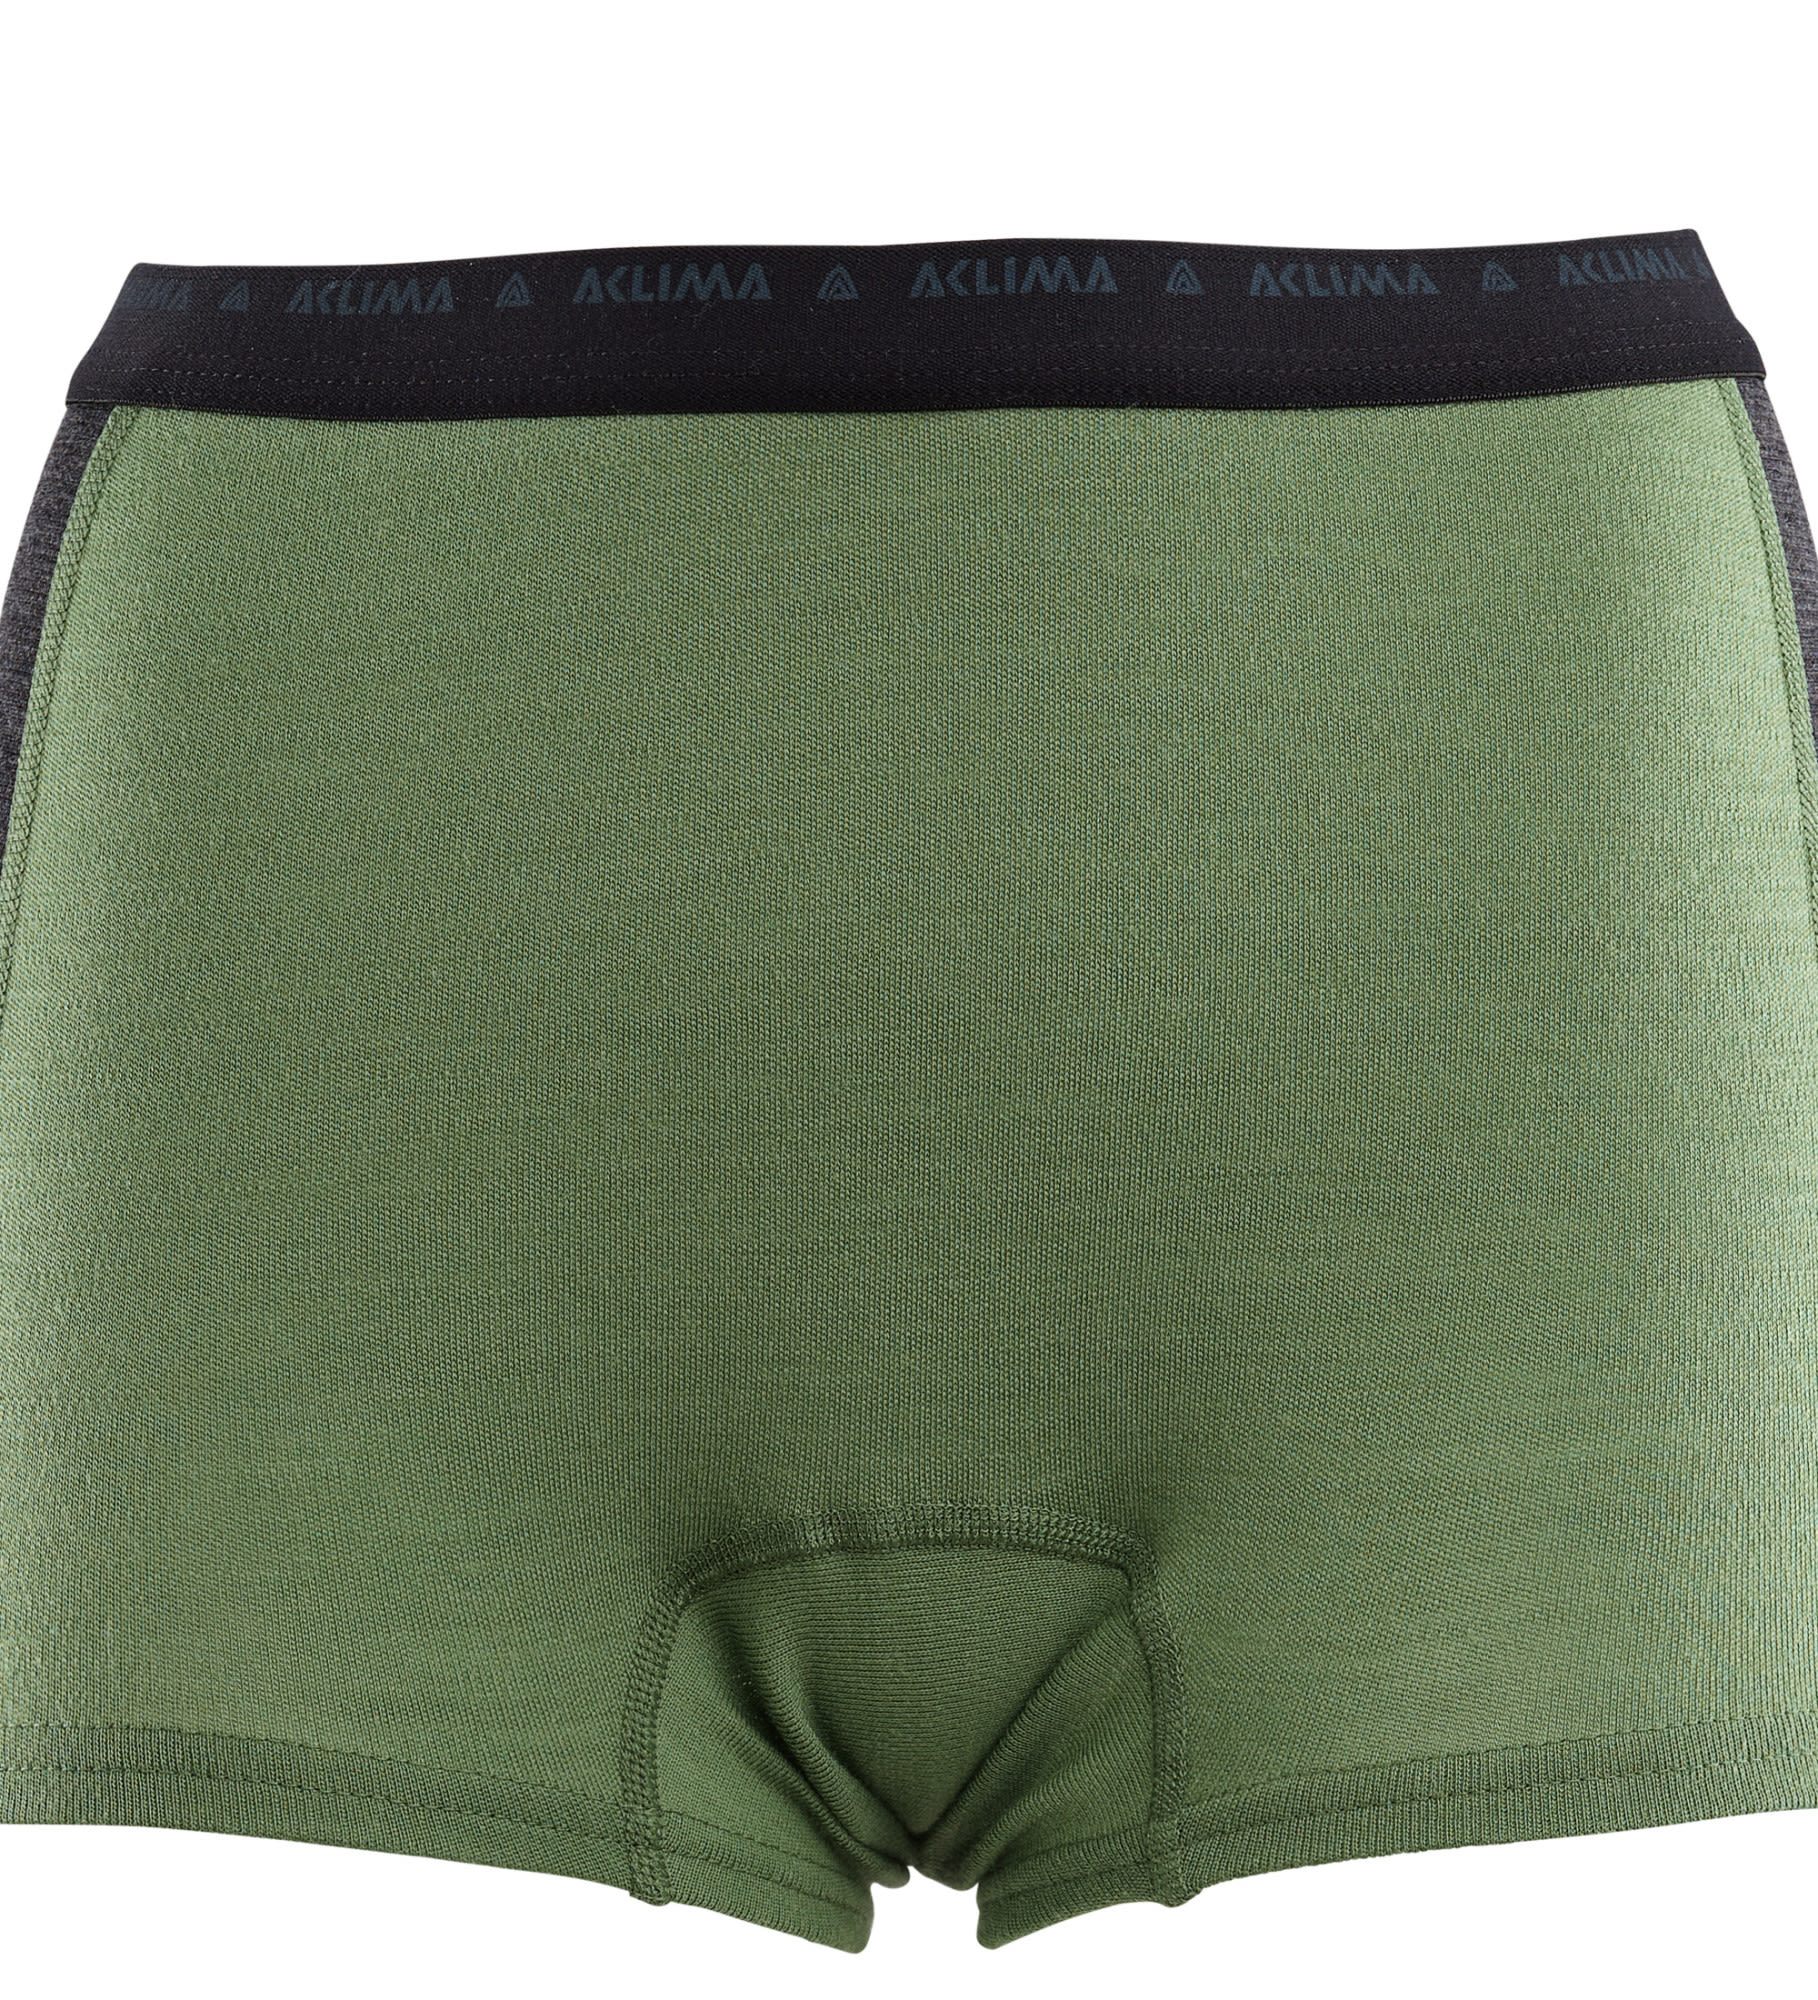 Aclima W Warmwool Hipster Grün | Damen Kurze Unterhose